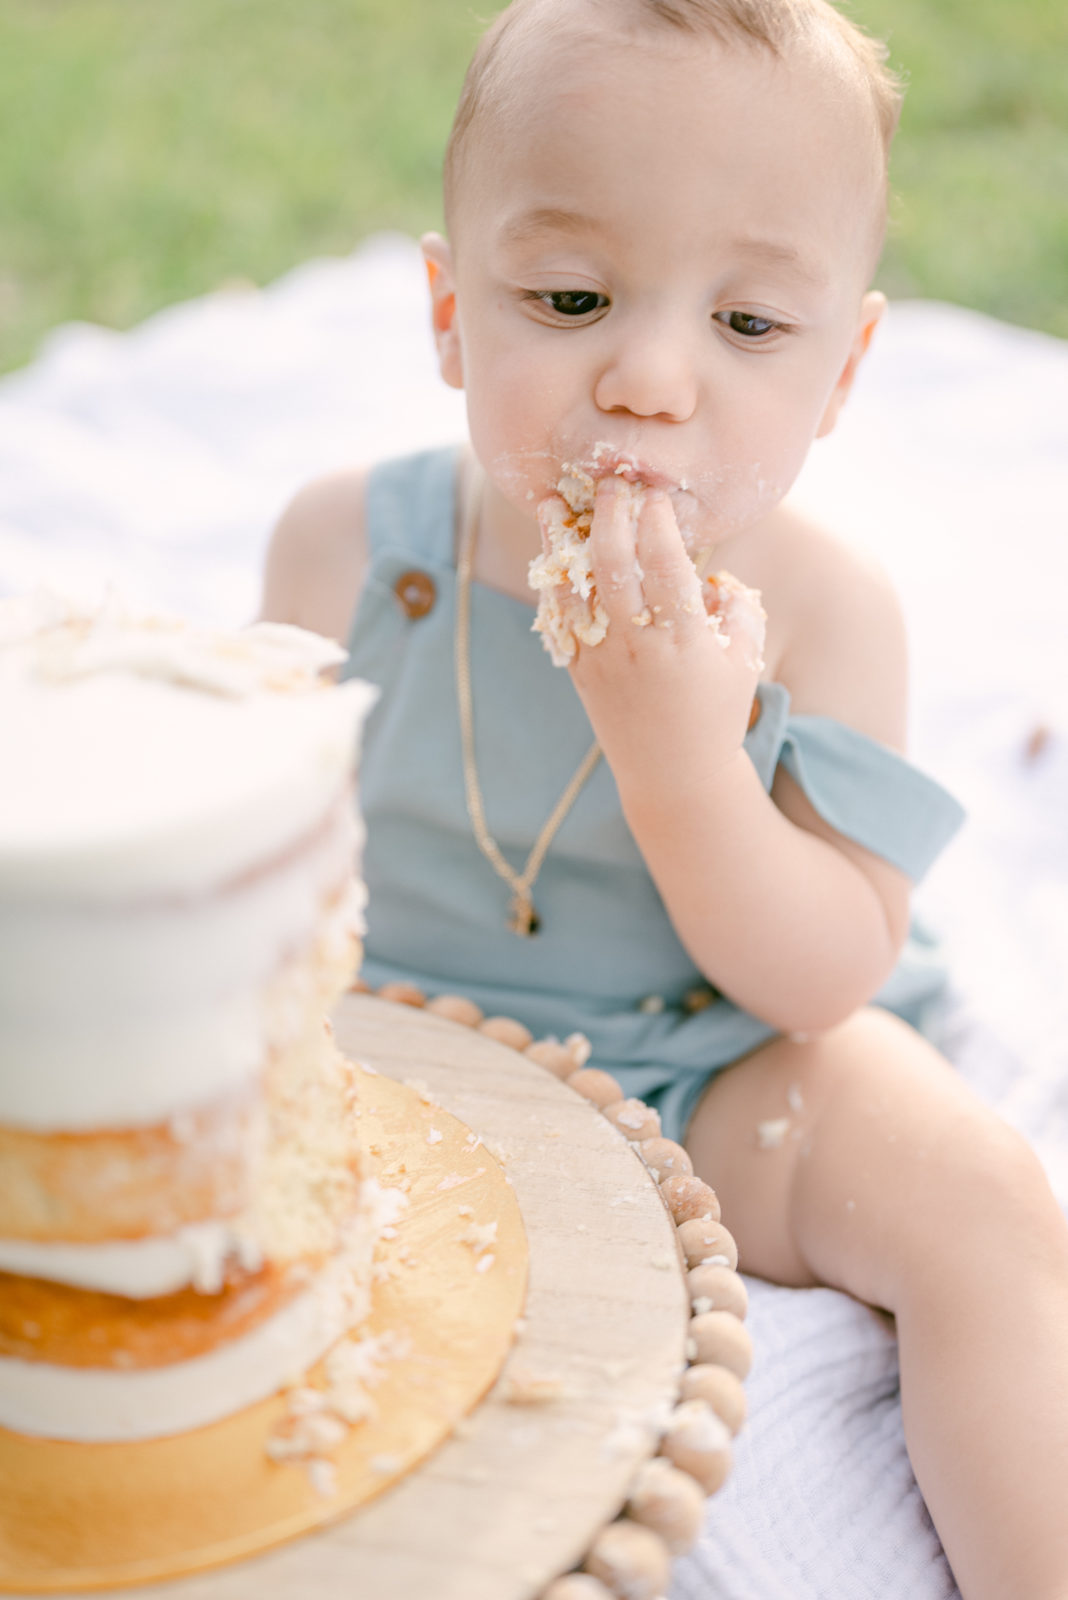 Baby smashing the cake